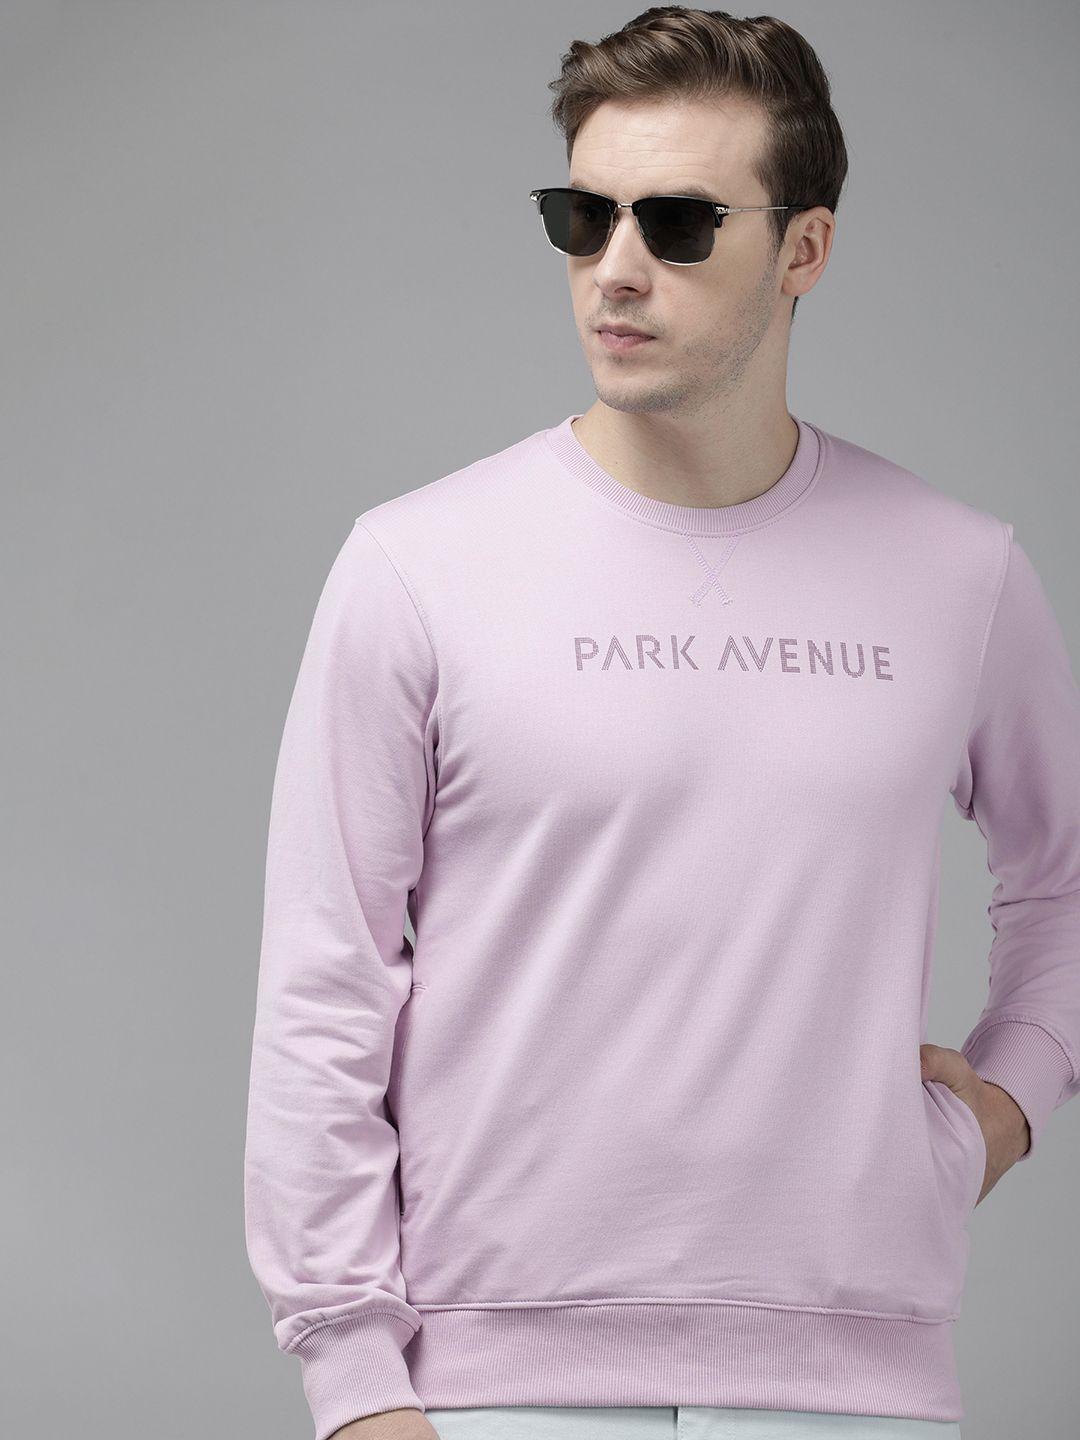 park-avenue-long-sleeves-brand-logo-printed-sweatshirt